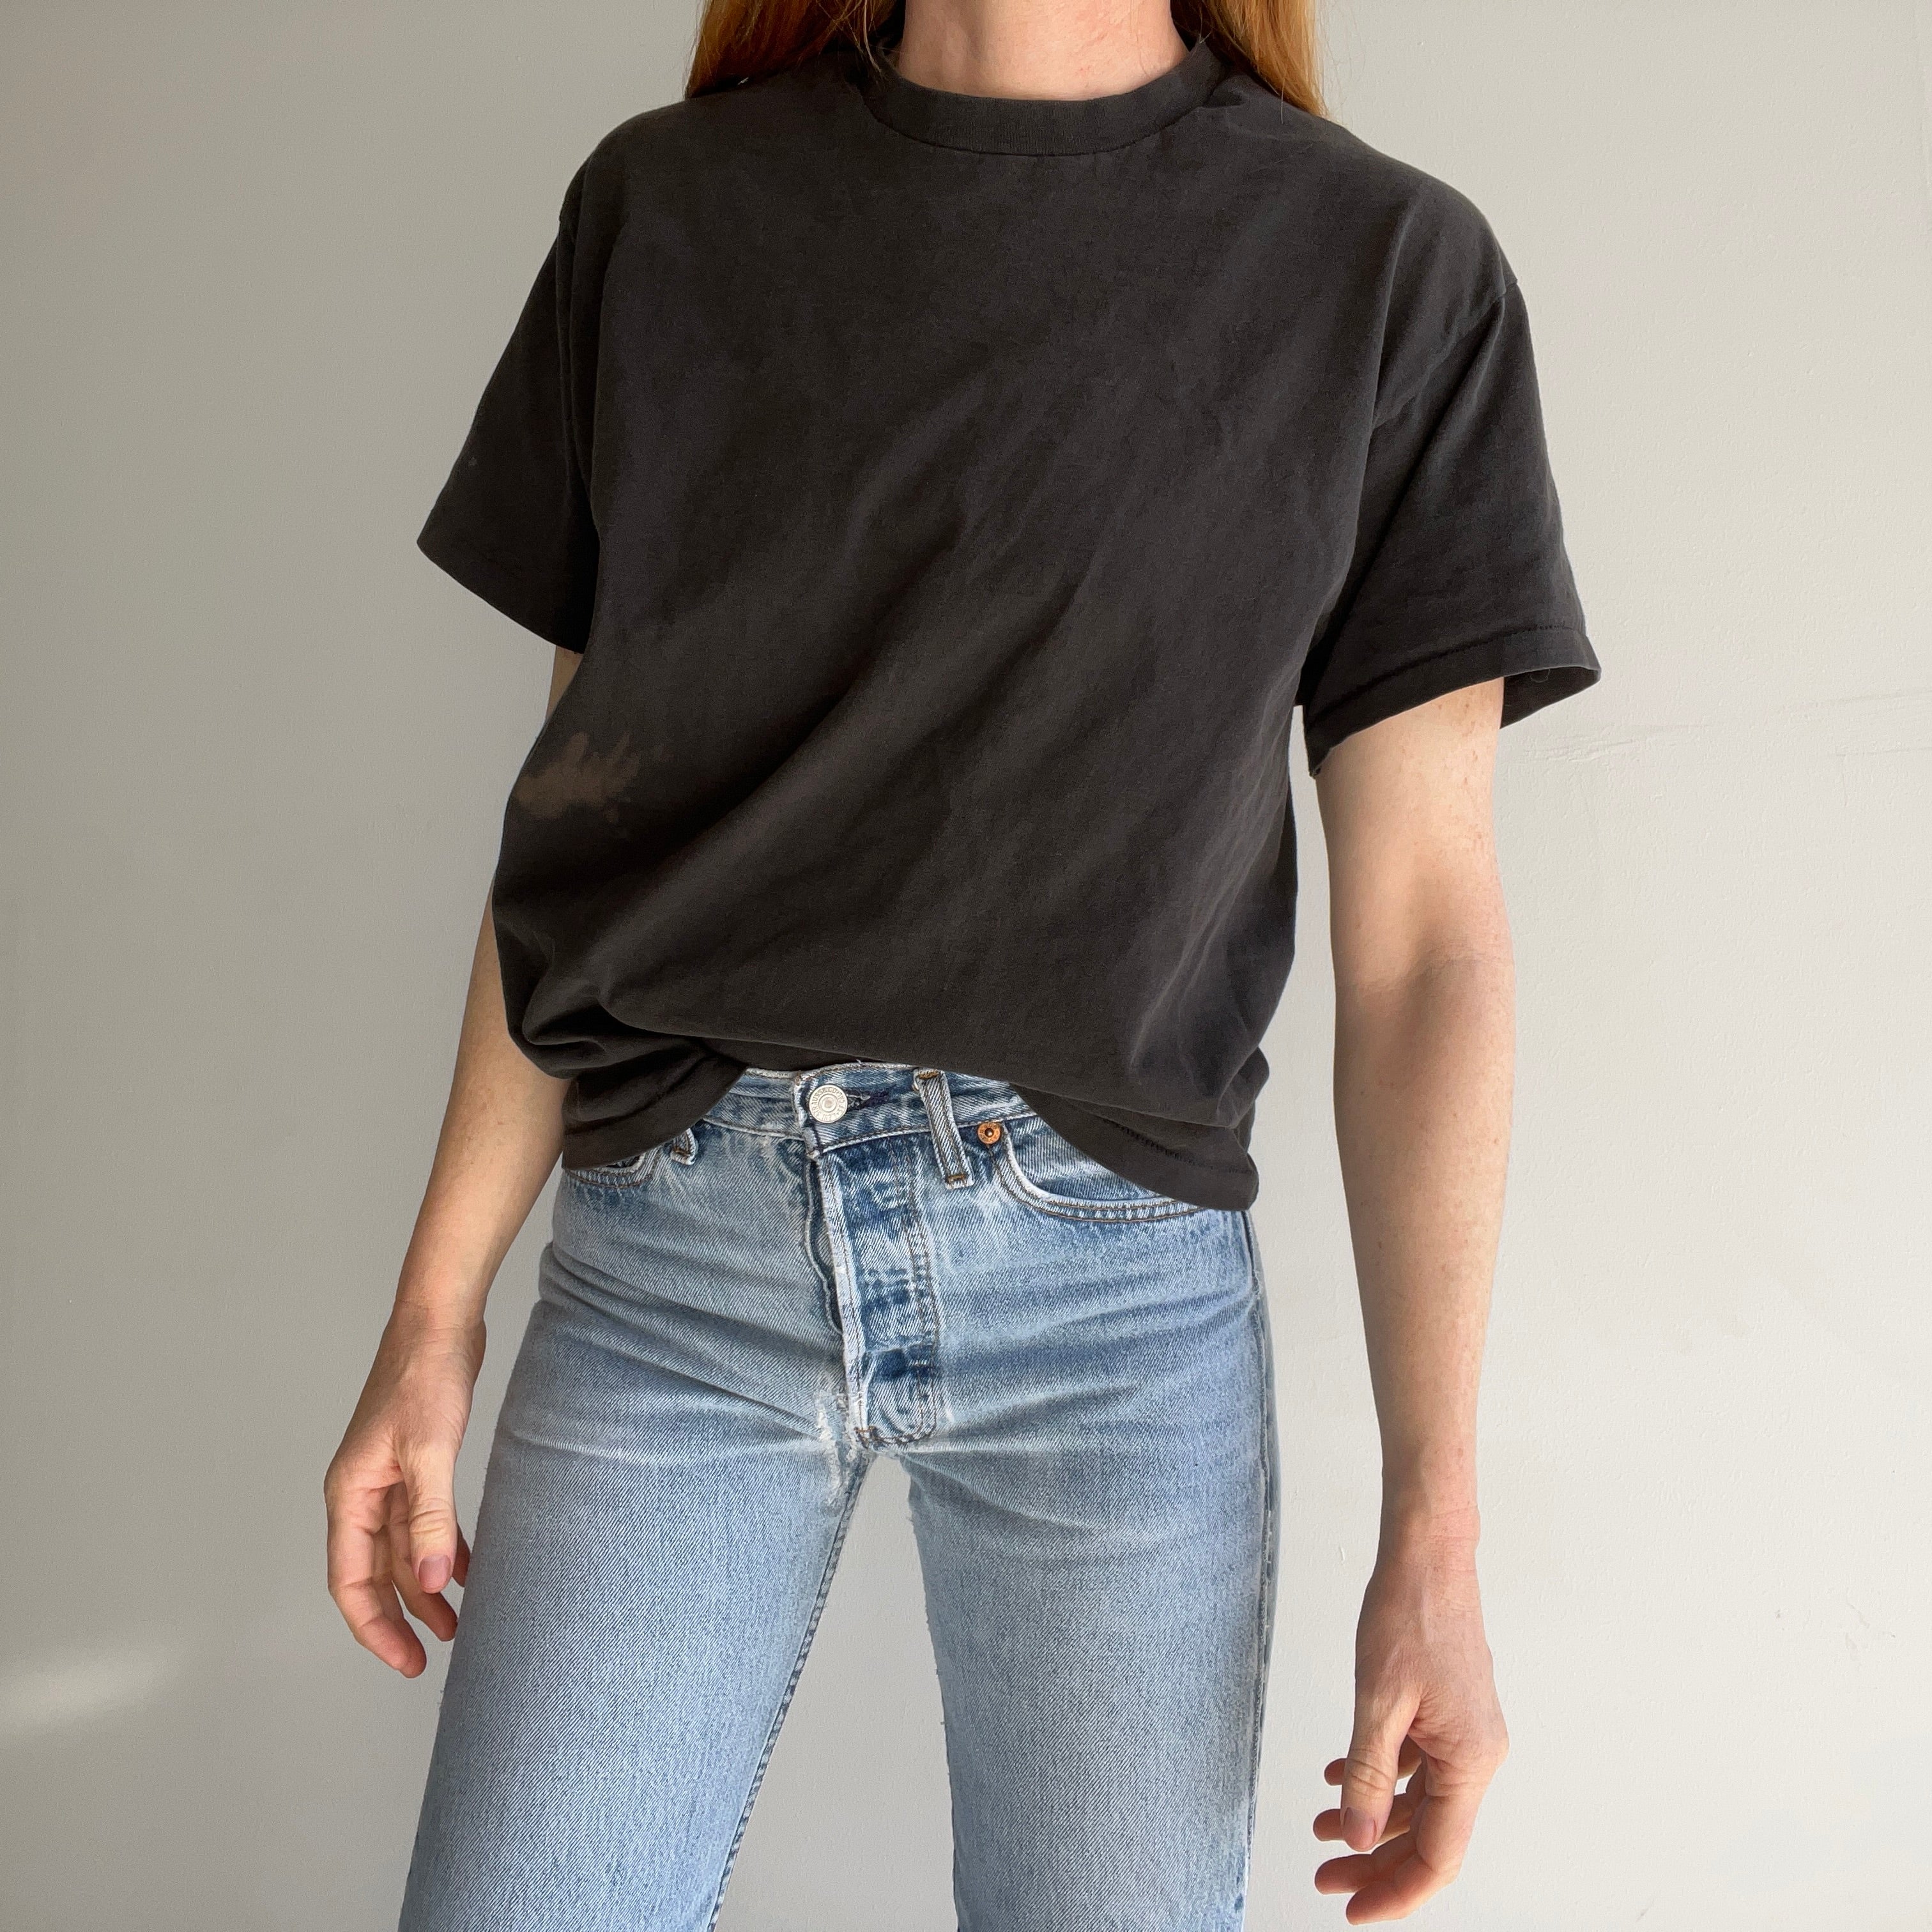 T-shirt noir vierge en coton de poids moyen des années 1990 avec usure